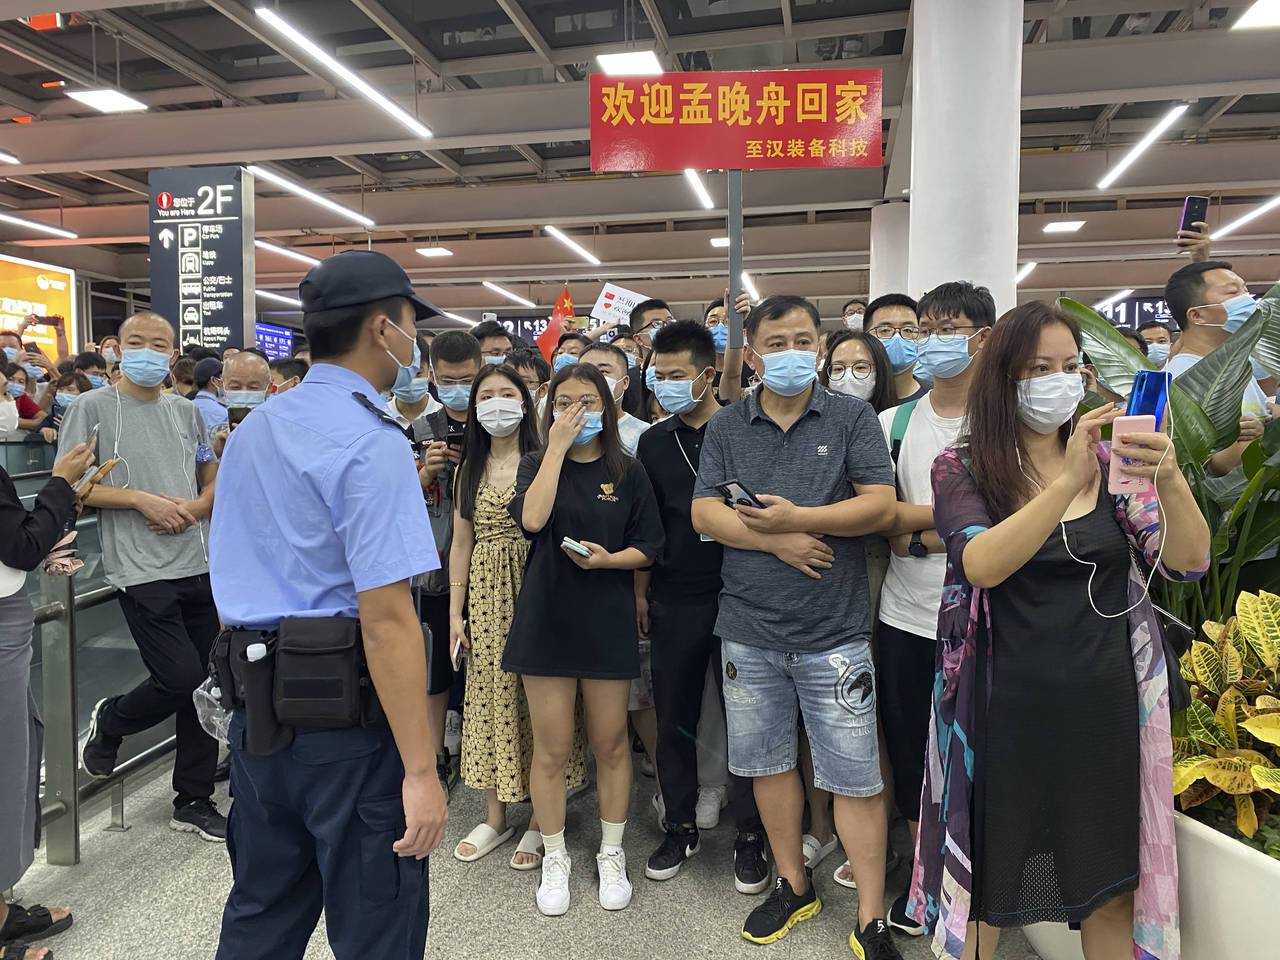 Police stand guard as supporters of Huawei CFO Meng Wanzhou gather at Shenzhen Bao'an International...